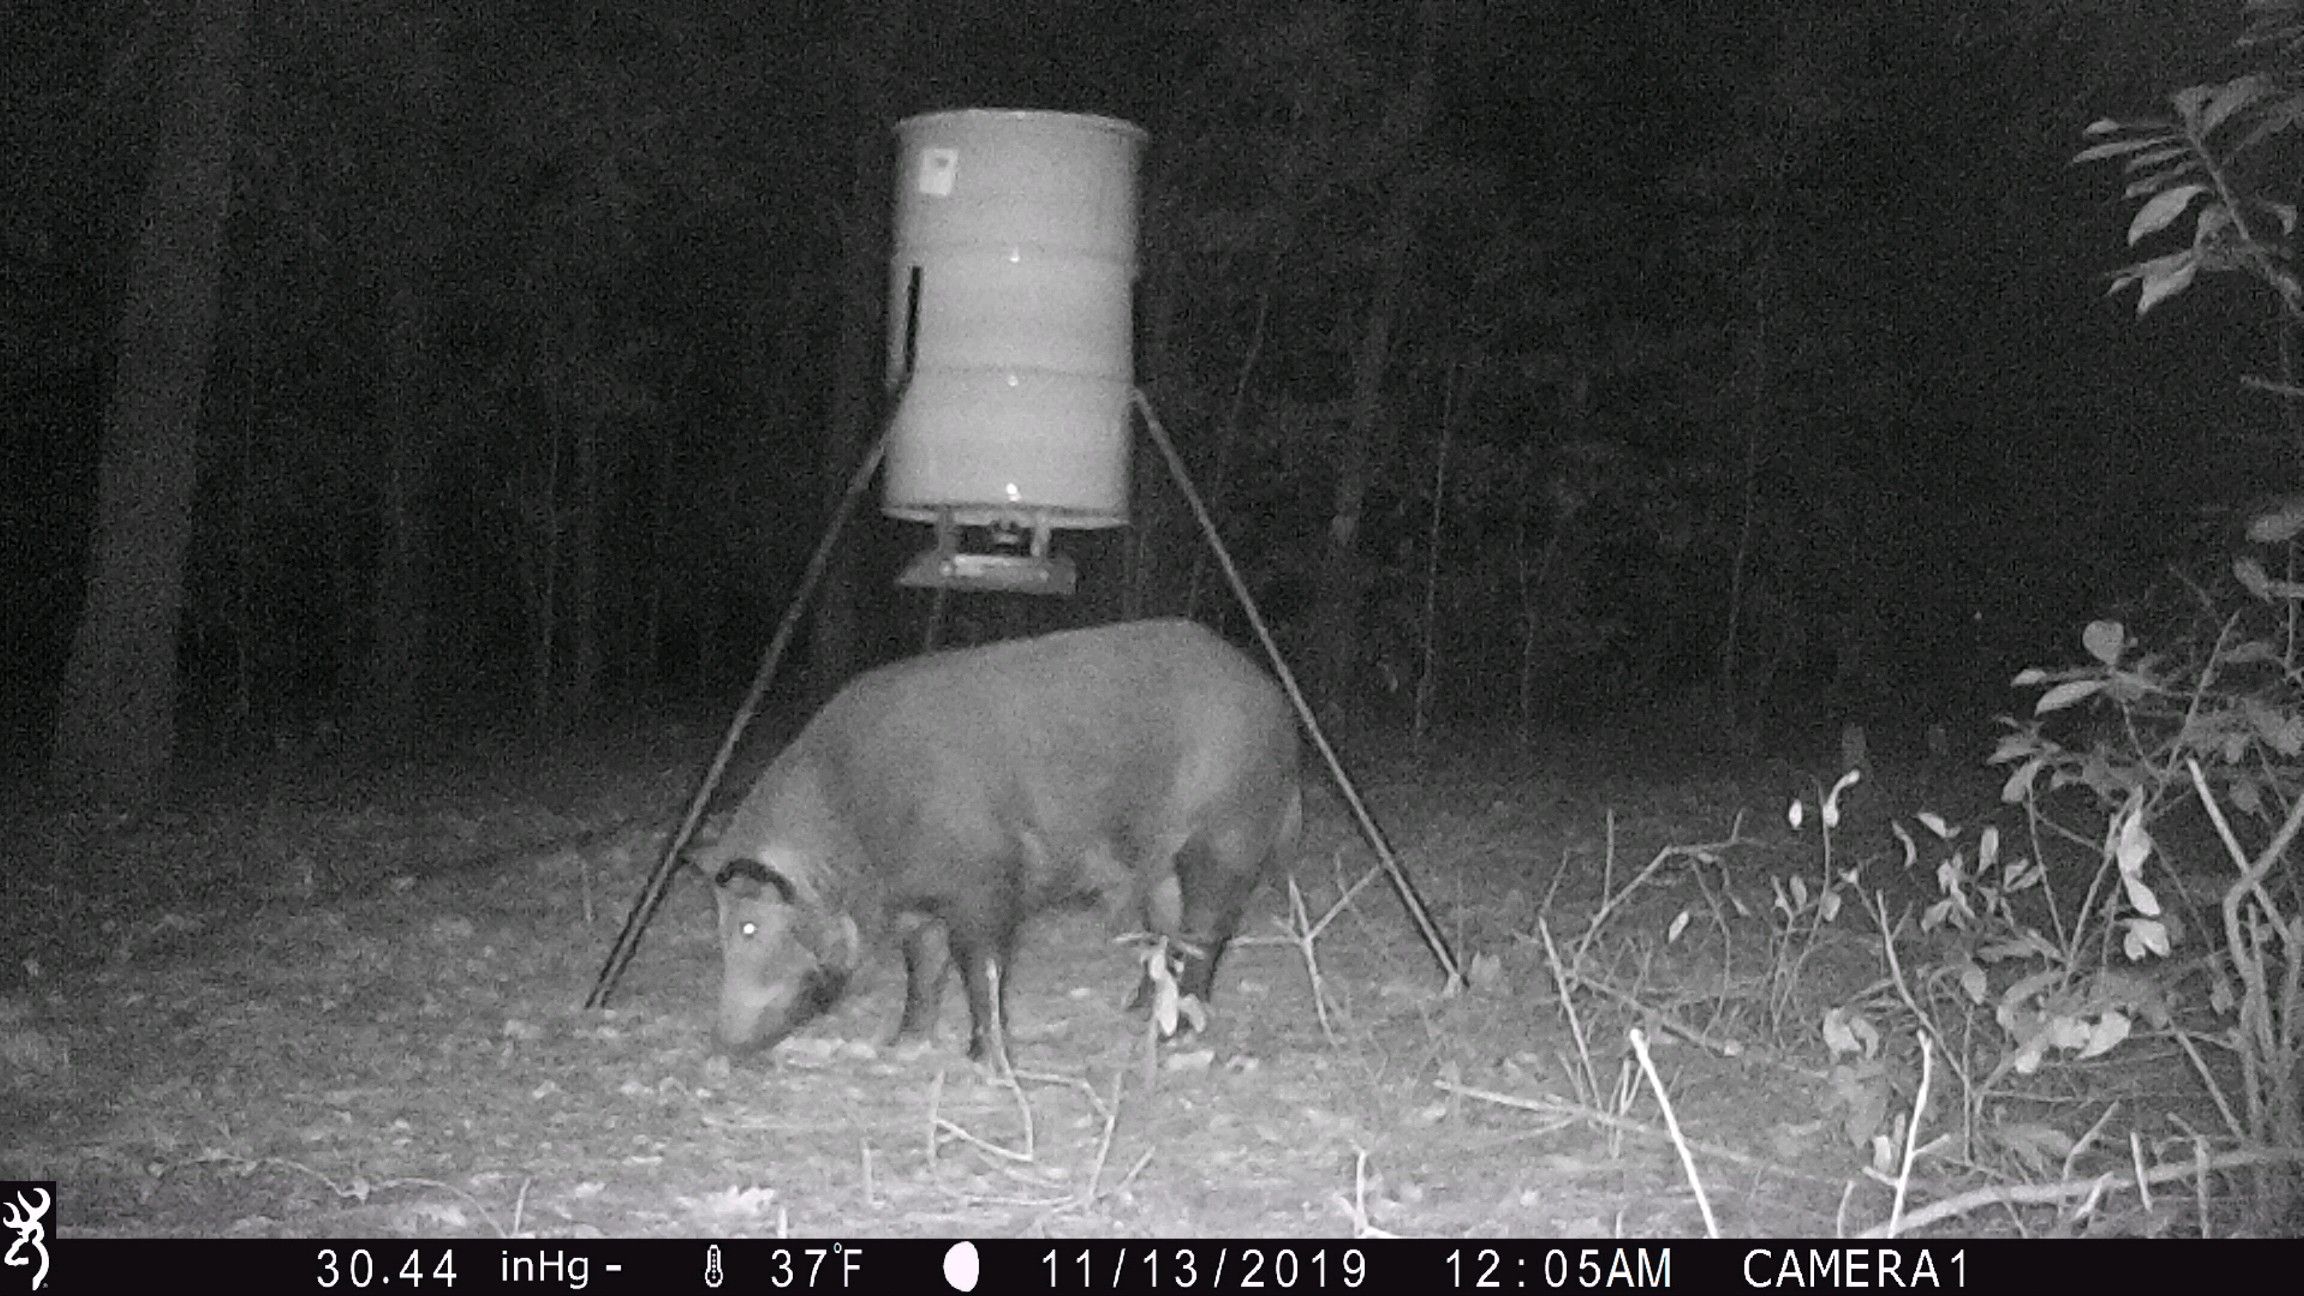 Hog at Feeder Nightime.jpeg